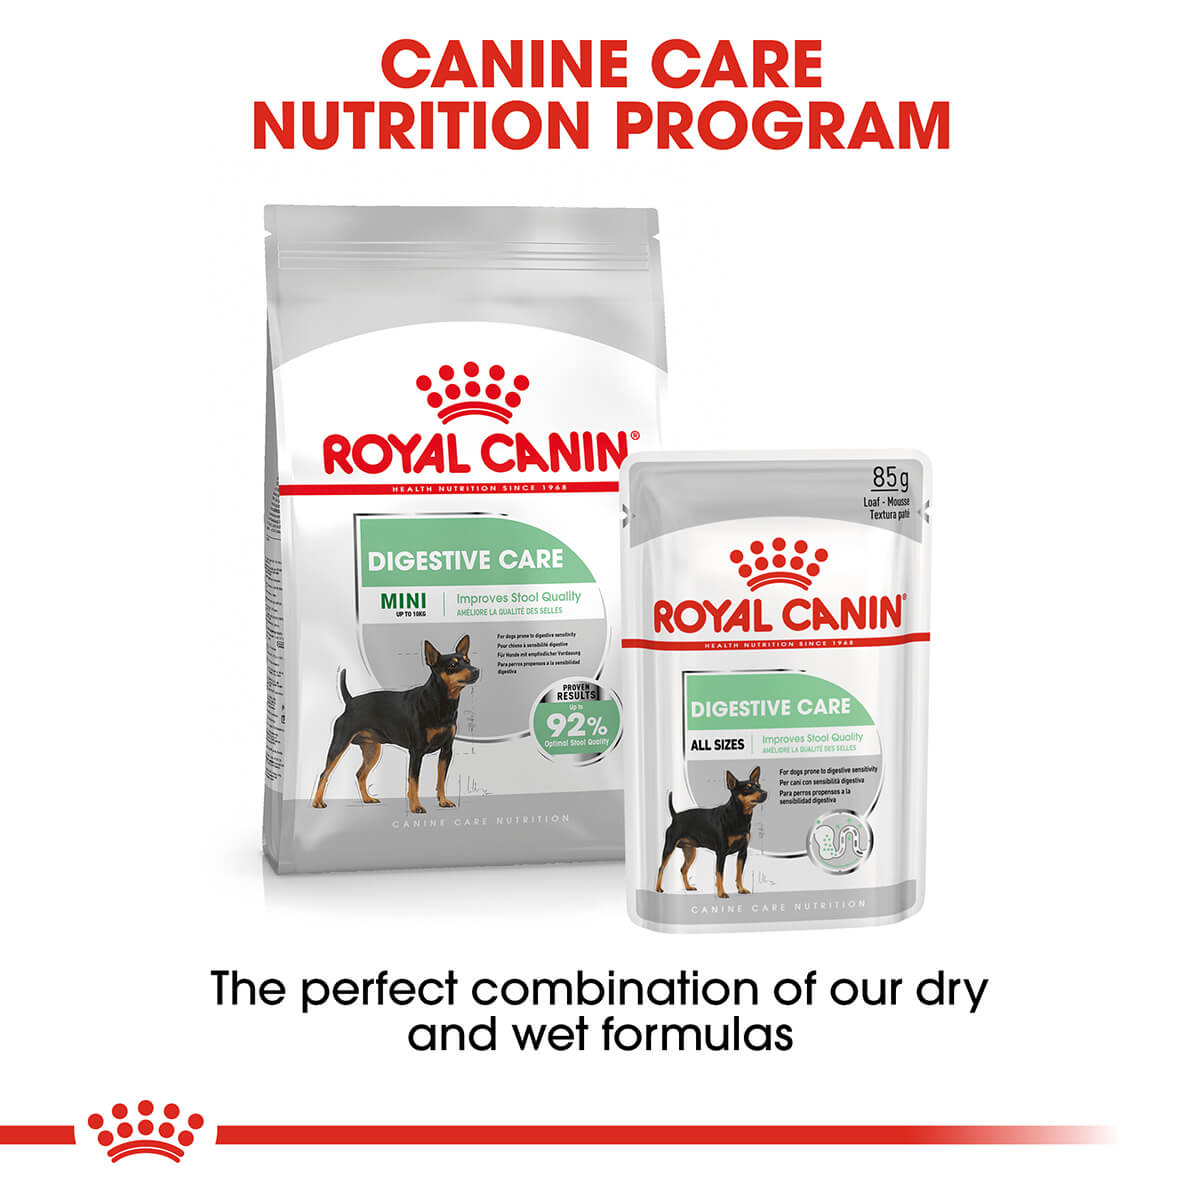 Royal Canin Digestive Care Adult Loaf Wet Dog Food 85g (100000019003) [default_color]